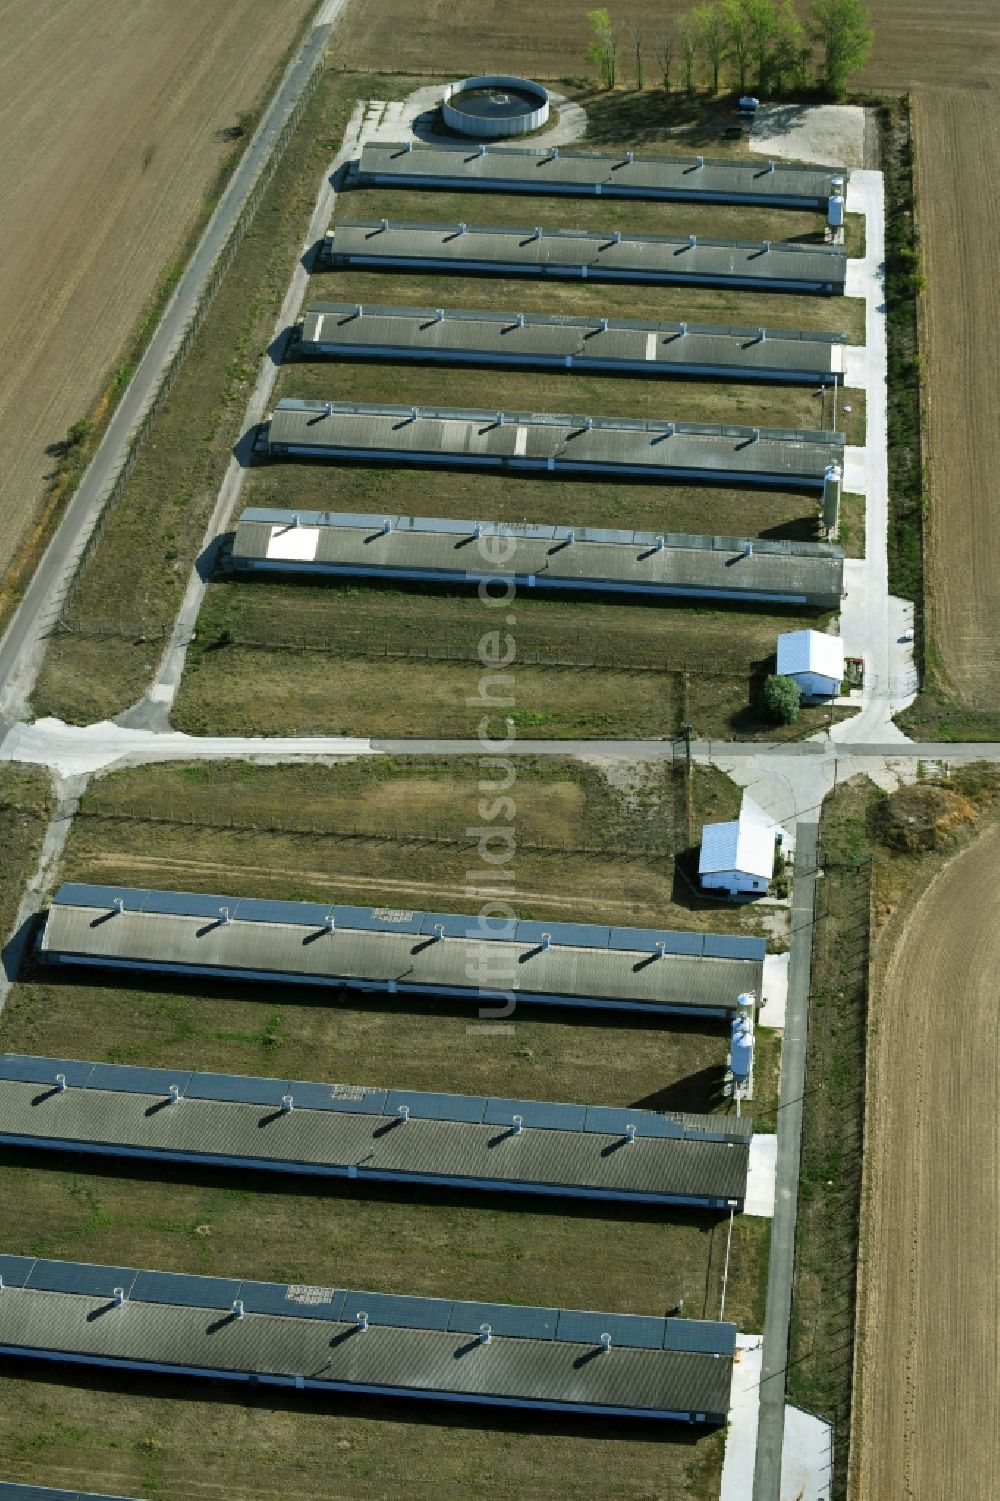 Oppin aus der Vogelperspektive: Tierzucht- Stallanlagen Tierzucht für die Fleischproduktion in Oppin im Bundesland Sachsen-Anhalt, Deutschland